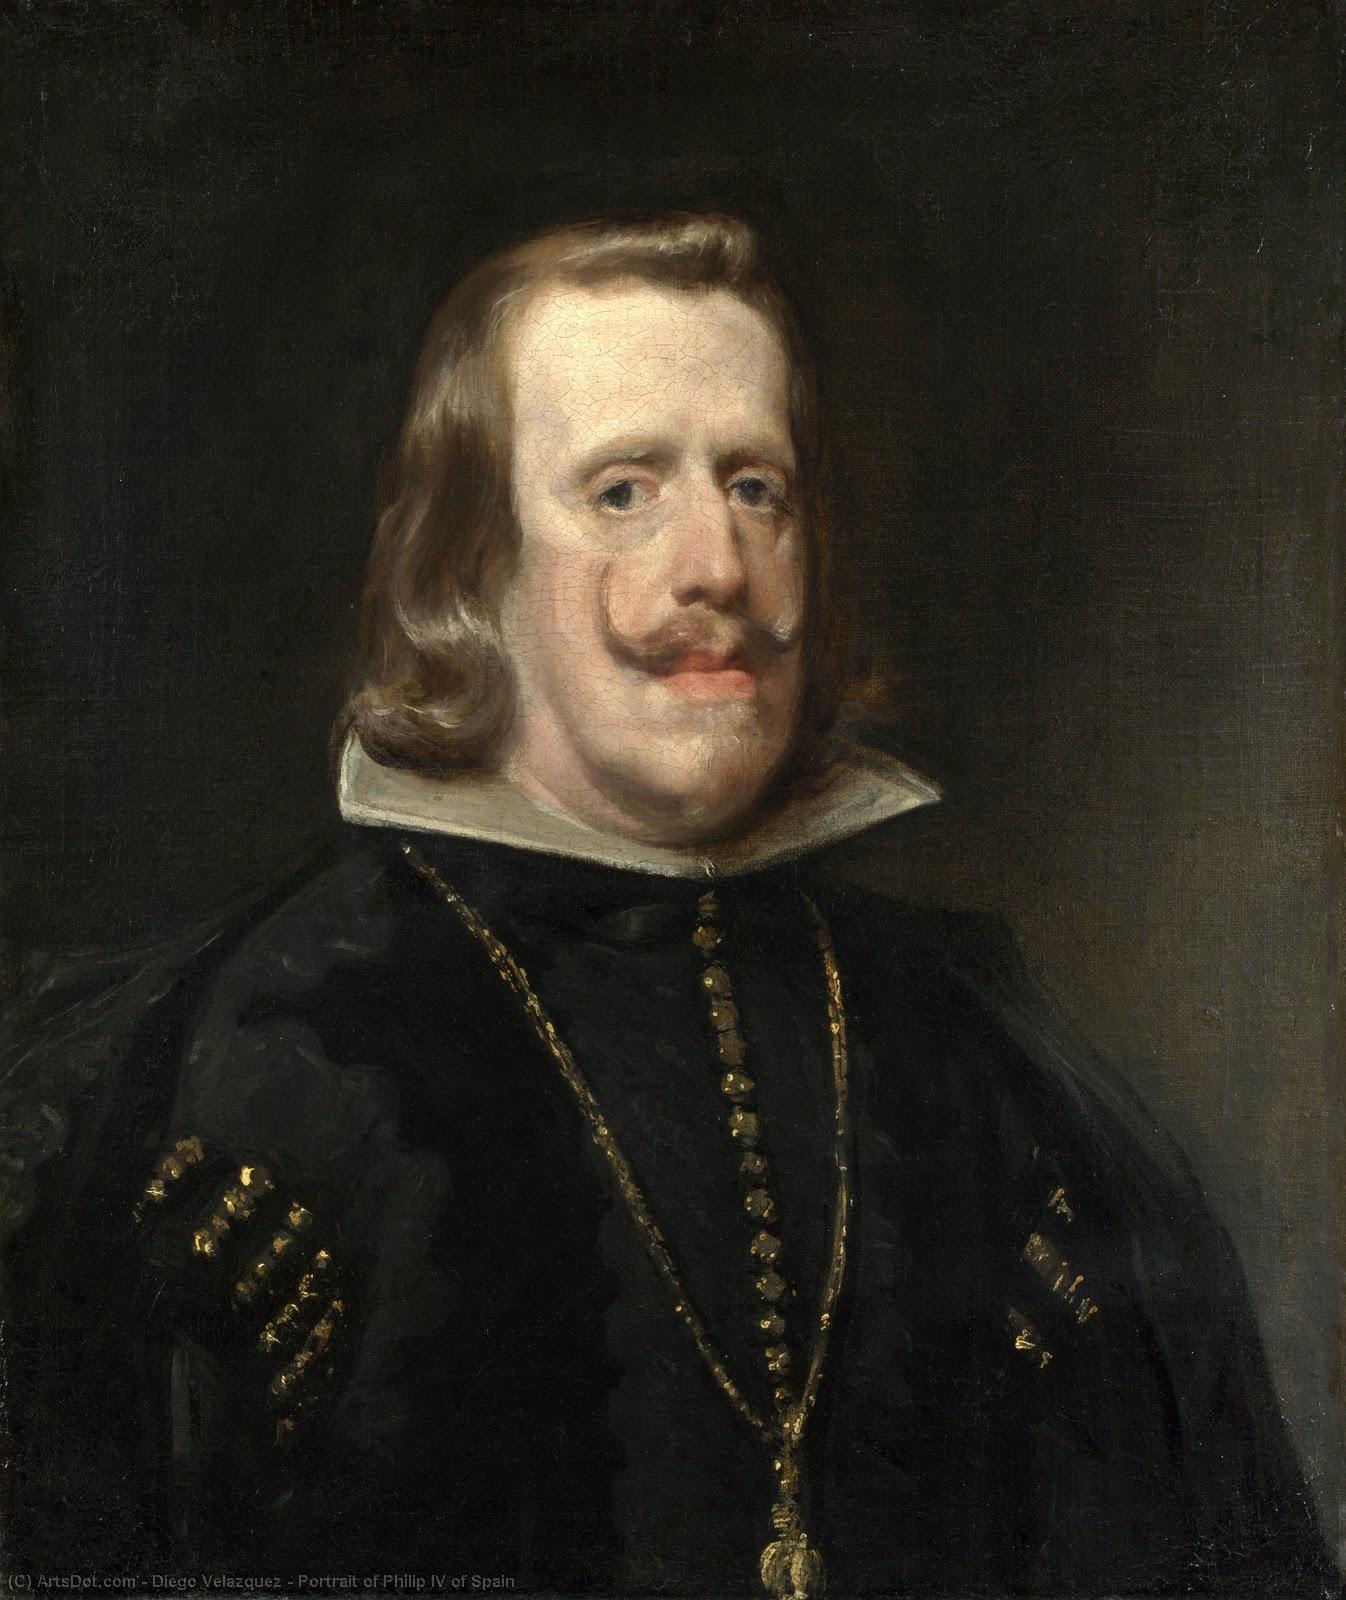 WikiOO.org - Enciclopédia das Belas Artes - Pintura, Arte por Diego Velazquez - Portrait of Philip IV of Spain